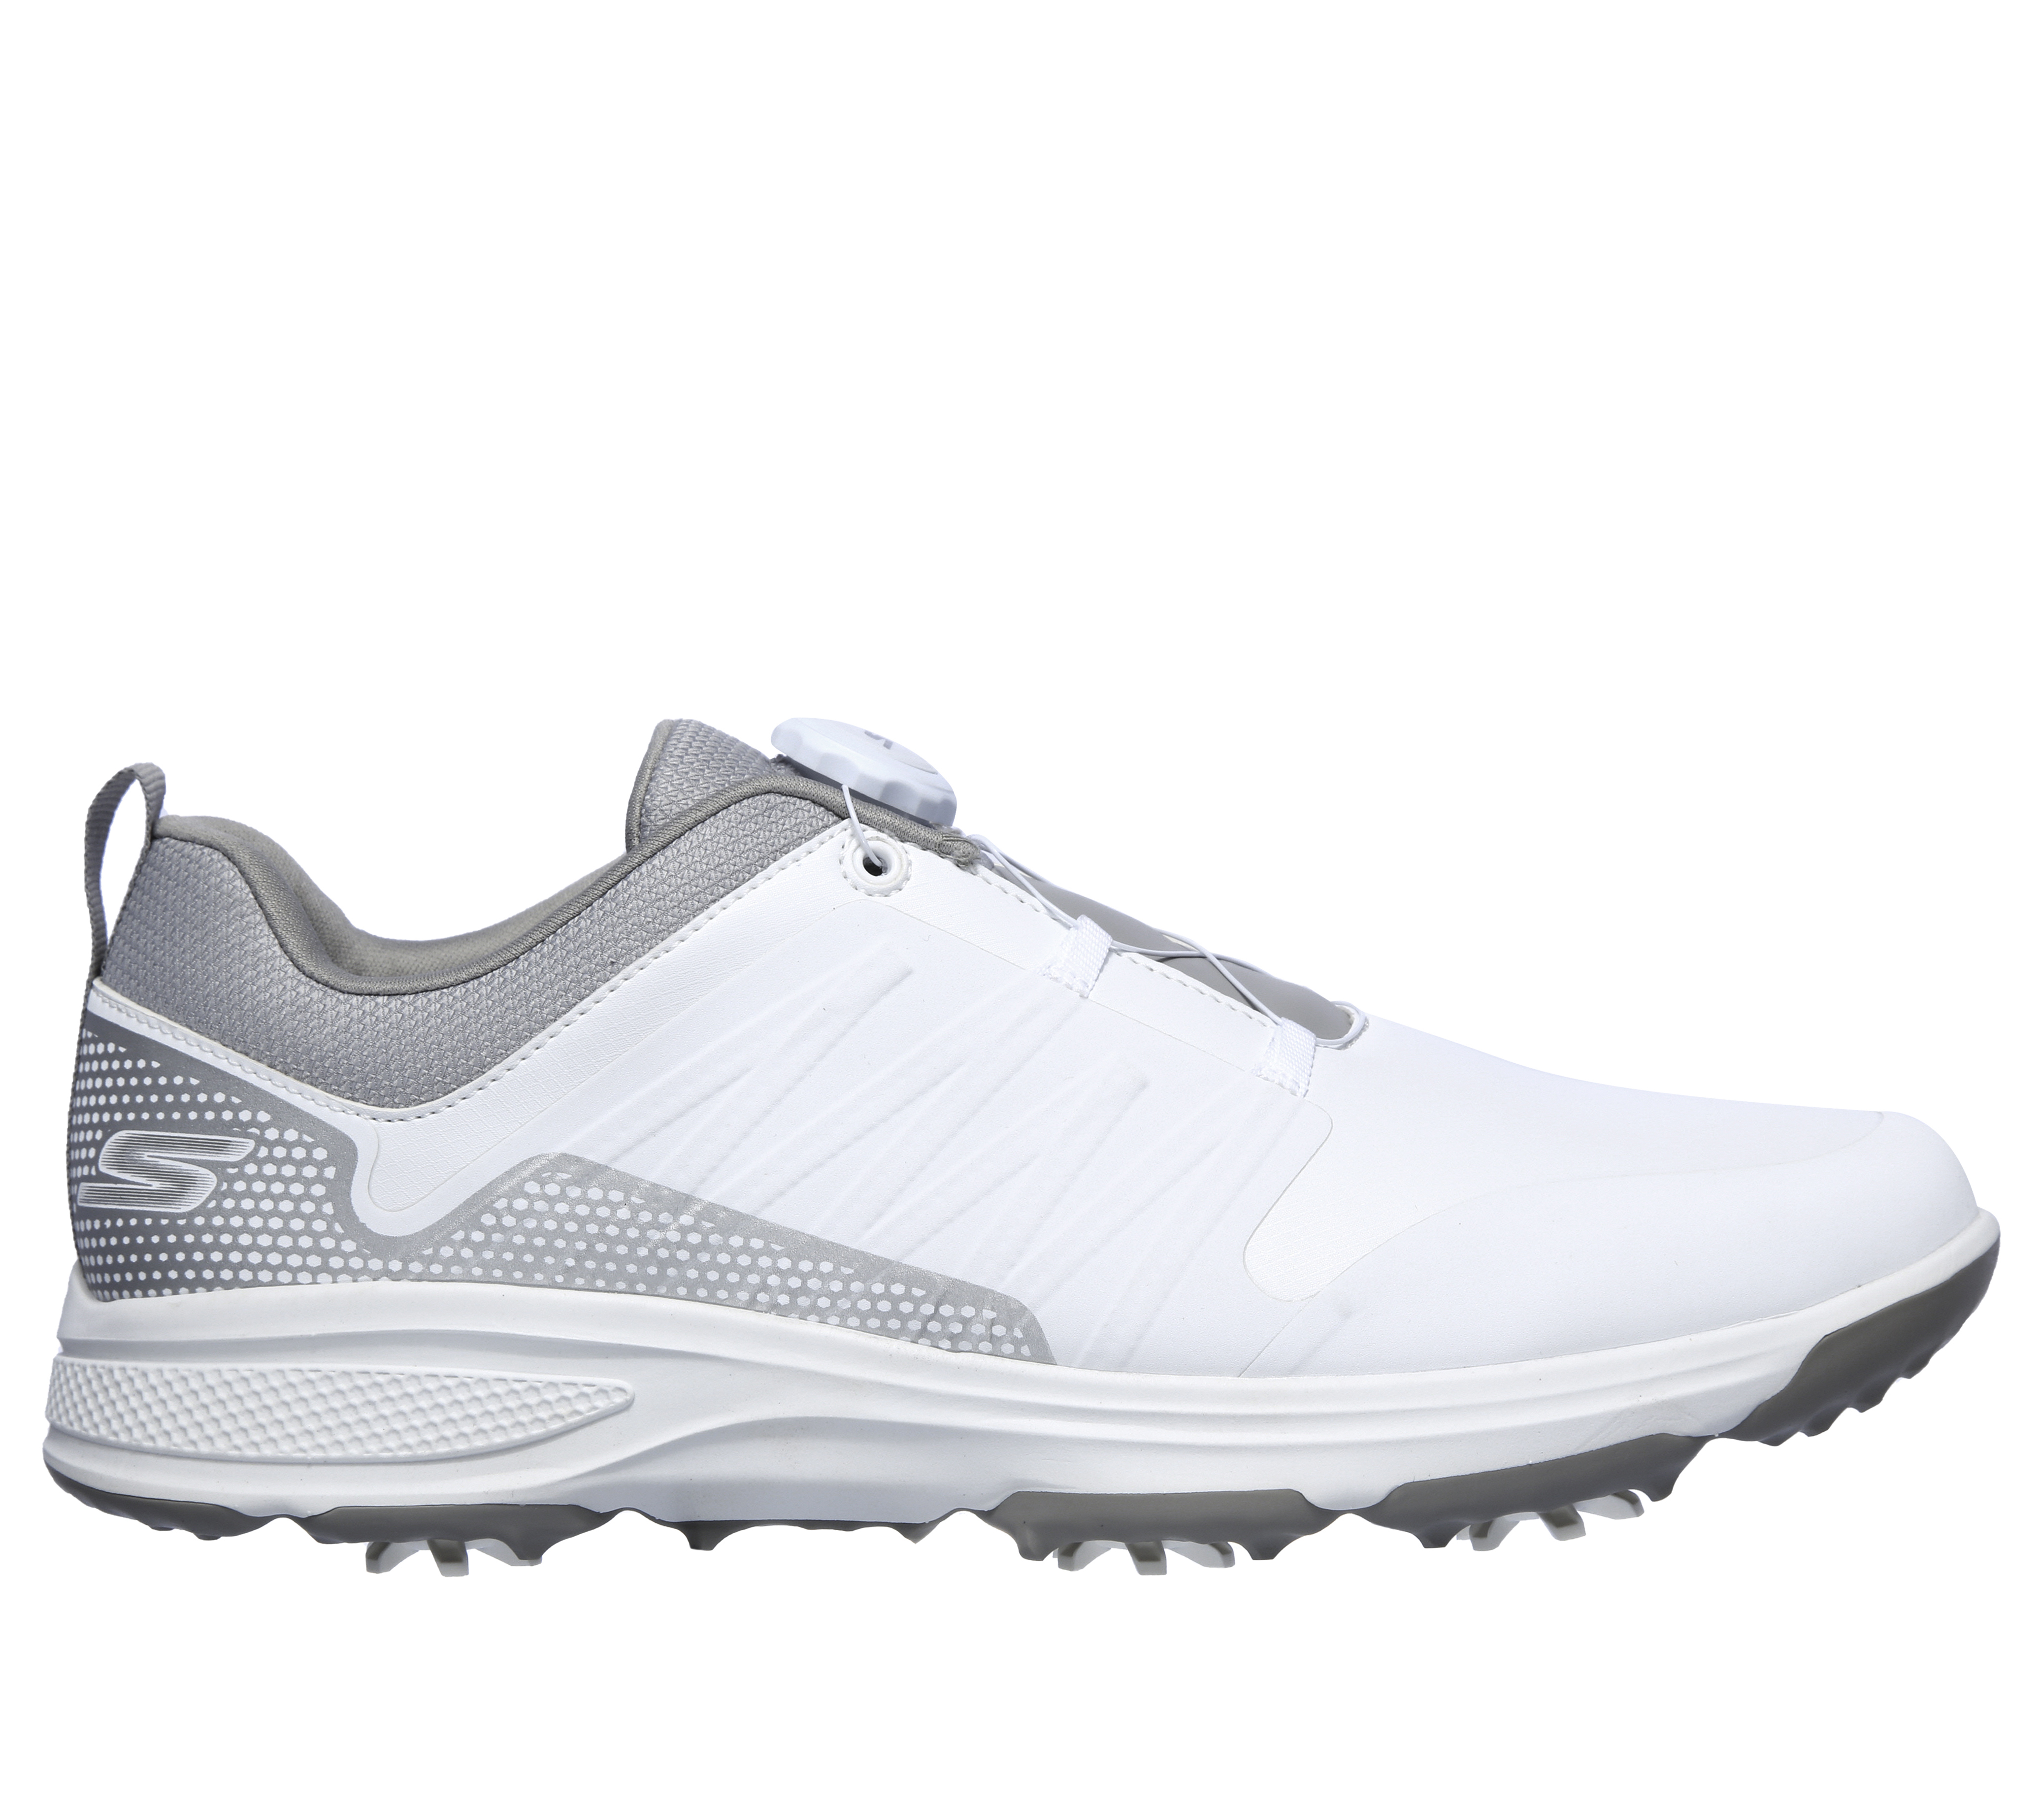 skechers men's torque waterproof golf shoe